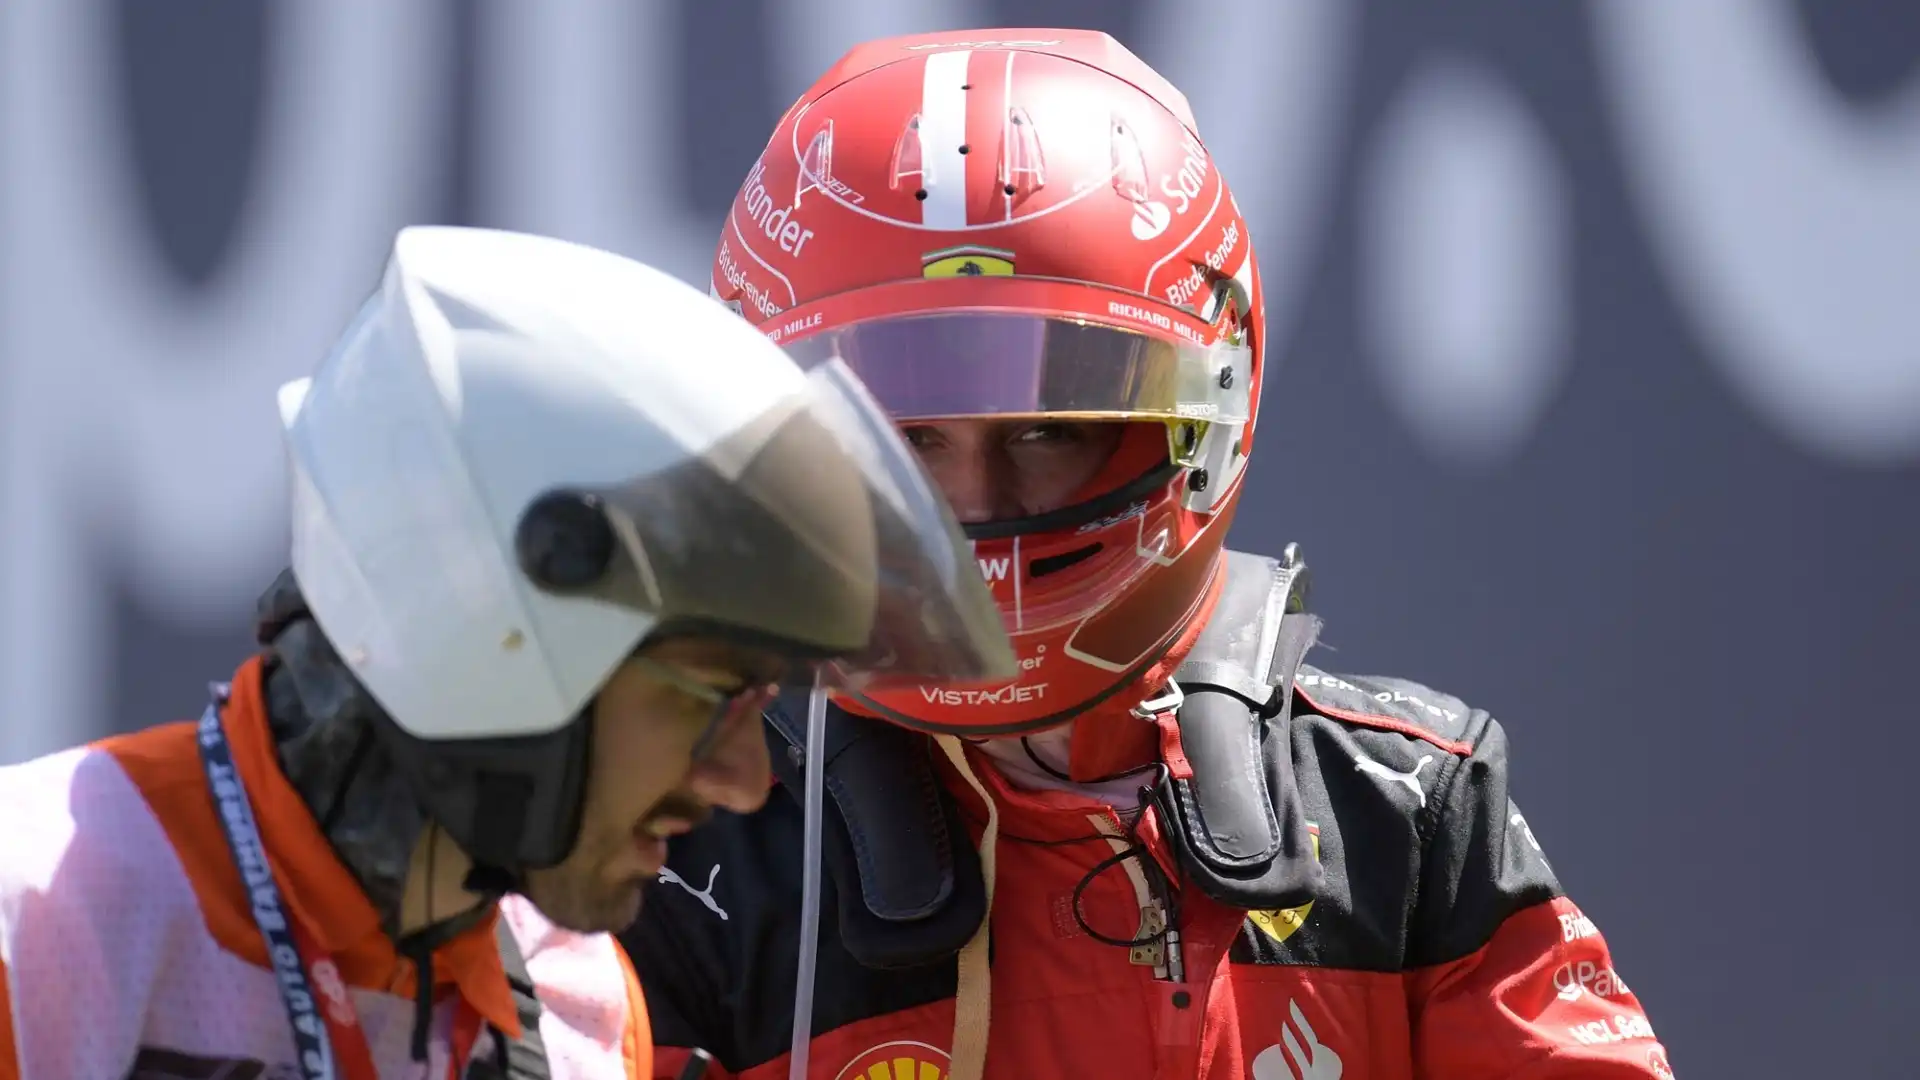 La sua Ferrari ha avuto un problema tecnico, e la gara del monegasco è finita ancora prima di iniziare